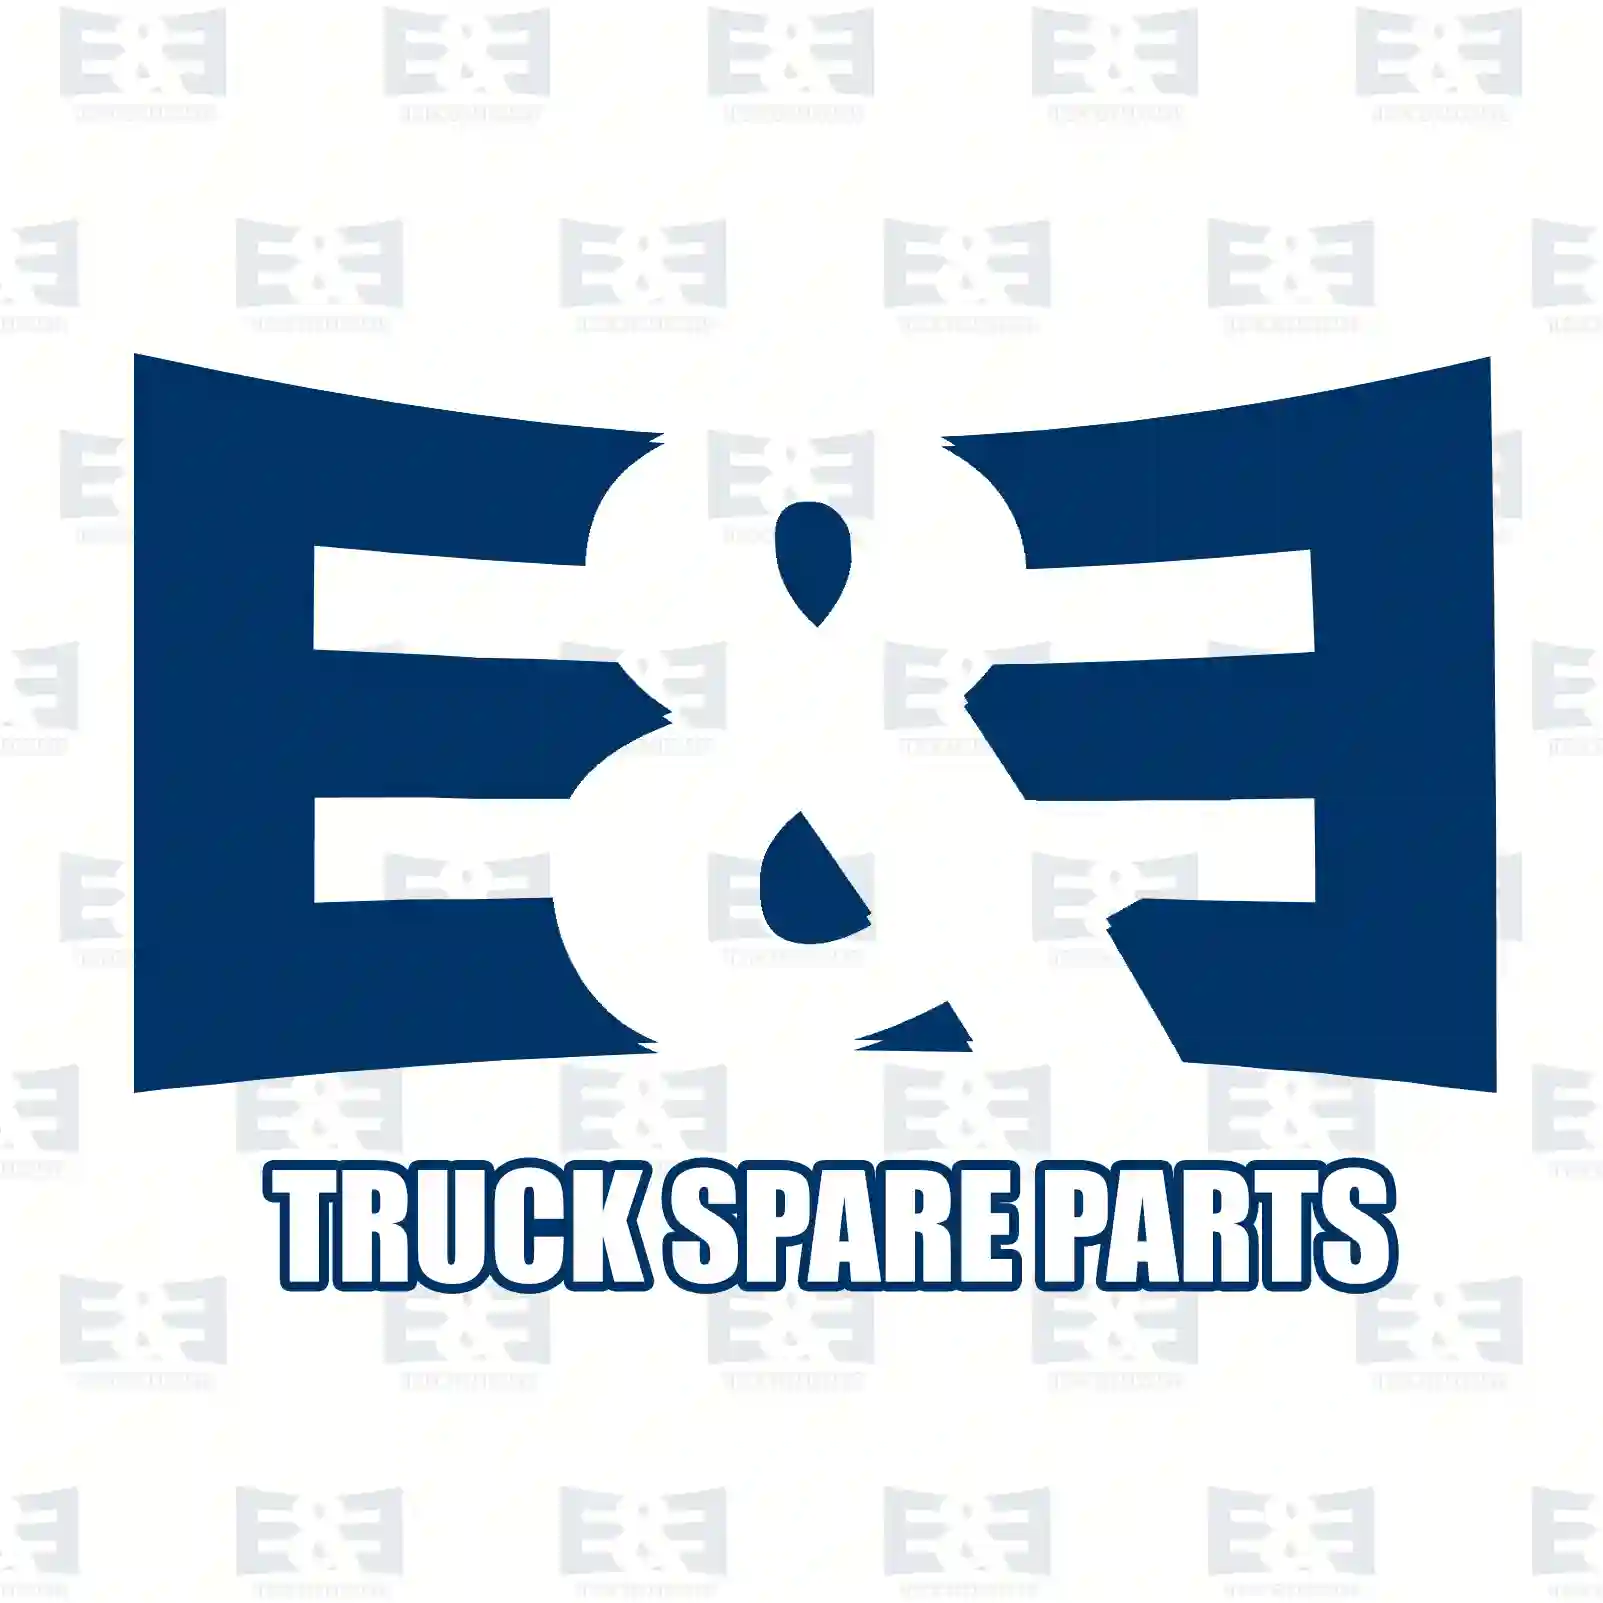 King pin kit, 2E2270578, 81442056023, 81442056029, ||  2E2270578 E&E Truck Spare Parts | Truck Spare Parts, Auotomotive Spare Parts King pin kit, 2E2270578, 81442056023, 81442056029, ||  2E2270578 E&E Truck Spare Parts | Truck Spare Parts, Auotomotive Spare Parts